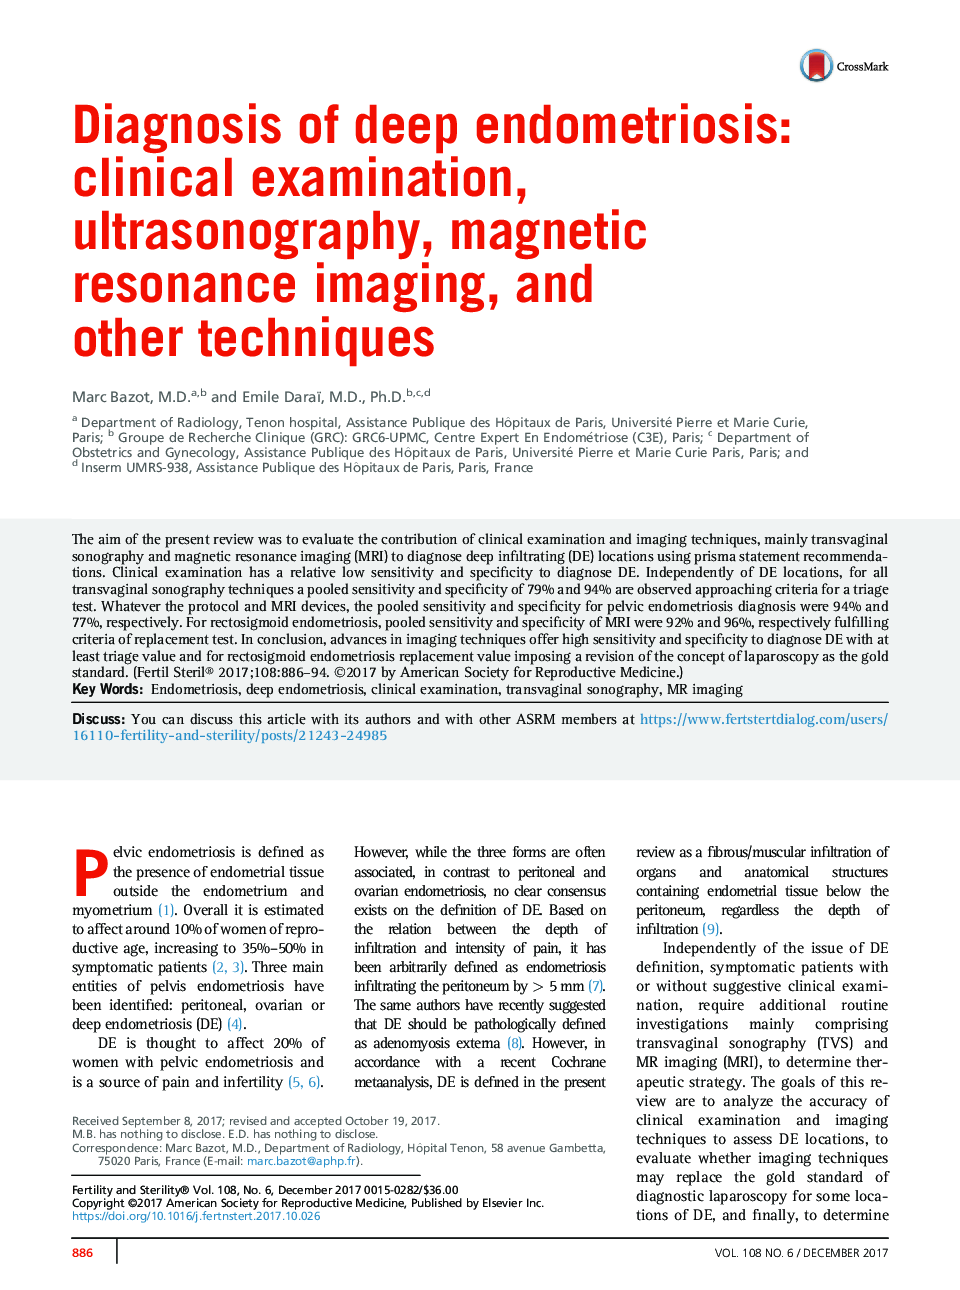 تشخیص آندومتریوز عمیق: معاینه بالینی، سونوگرافی، تصویربرداری رزونانس مغناطیسی، و سایر تکنیک ها 